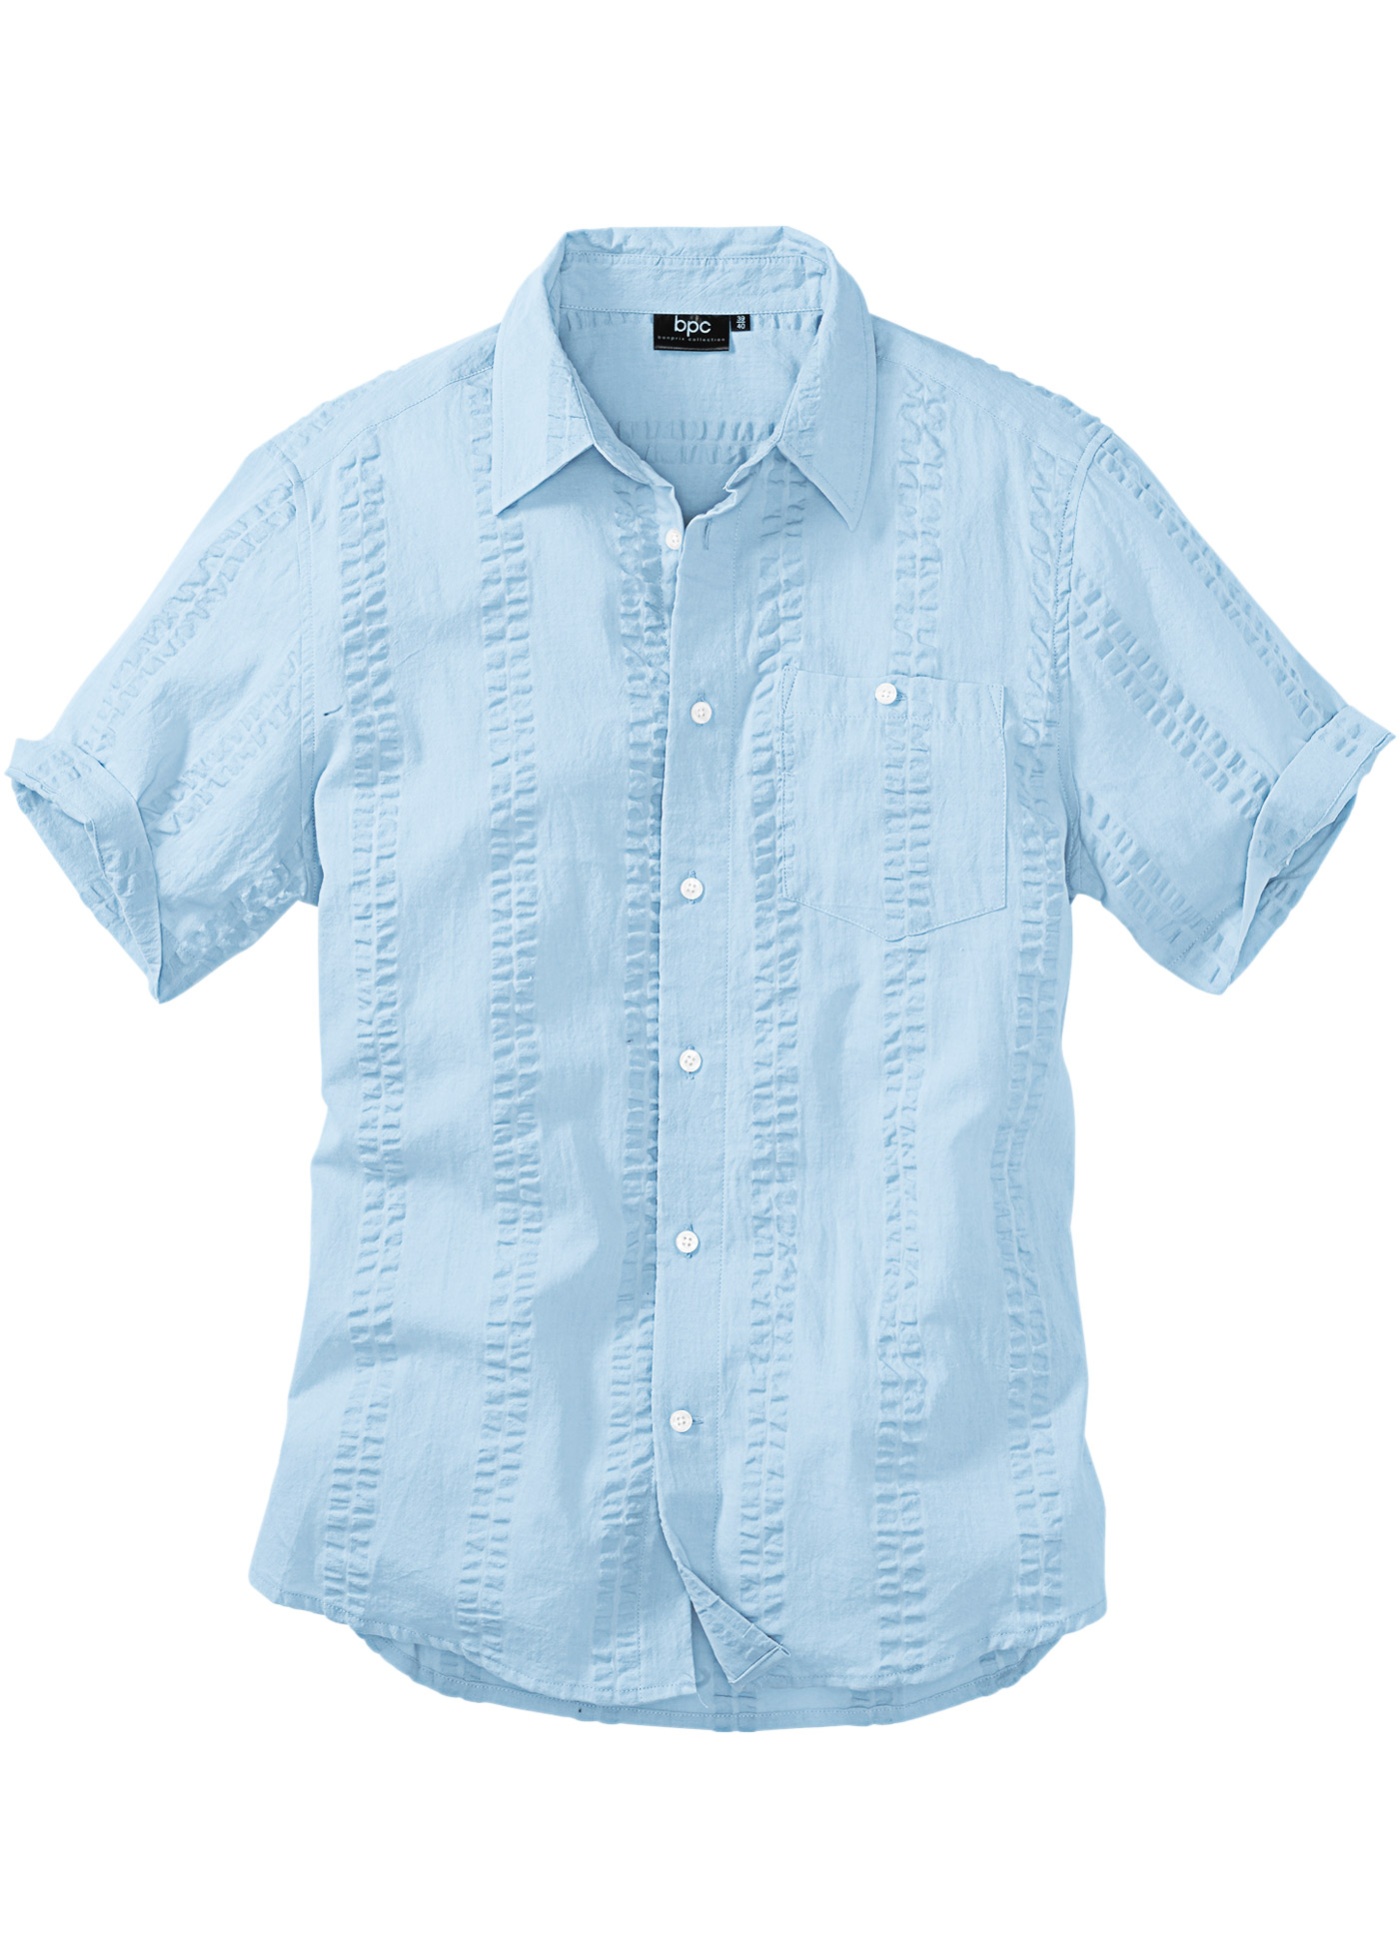 Купить летнюю рубашку мужскую с коротким рукавом. Bonprix рубашка Regular Fit. Рубашка bonprix мужская. Рубашки из ткани Seersucker. Голубая рубашка с коротким рукавом.